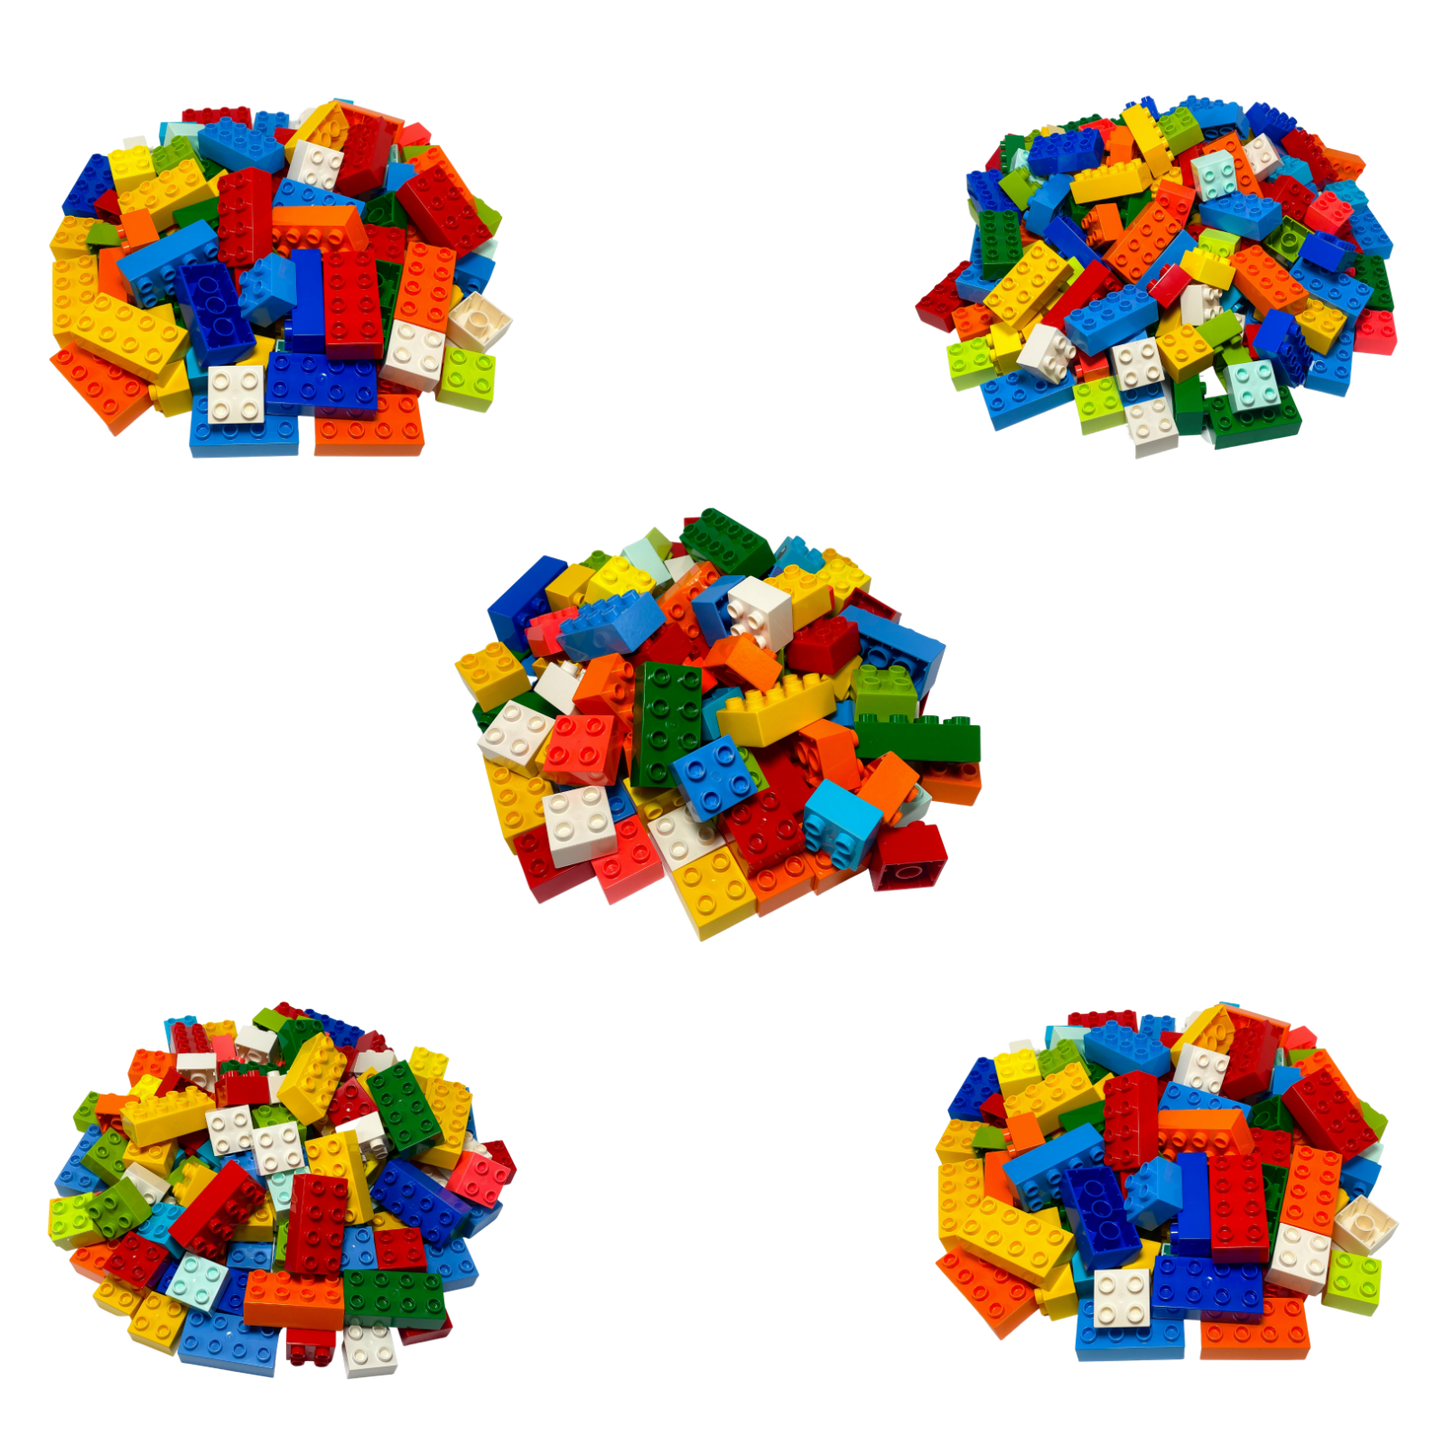 LEGO® DUPLO® 20 2x4 bricks and 30 2x2 bricks mixed colors - 3437 3011 NEW! Quantity 50x 